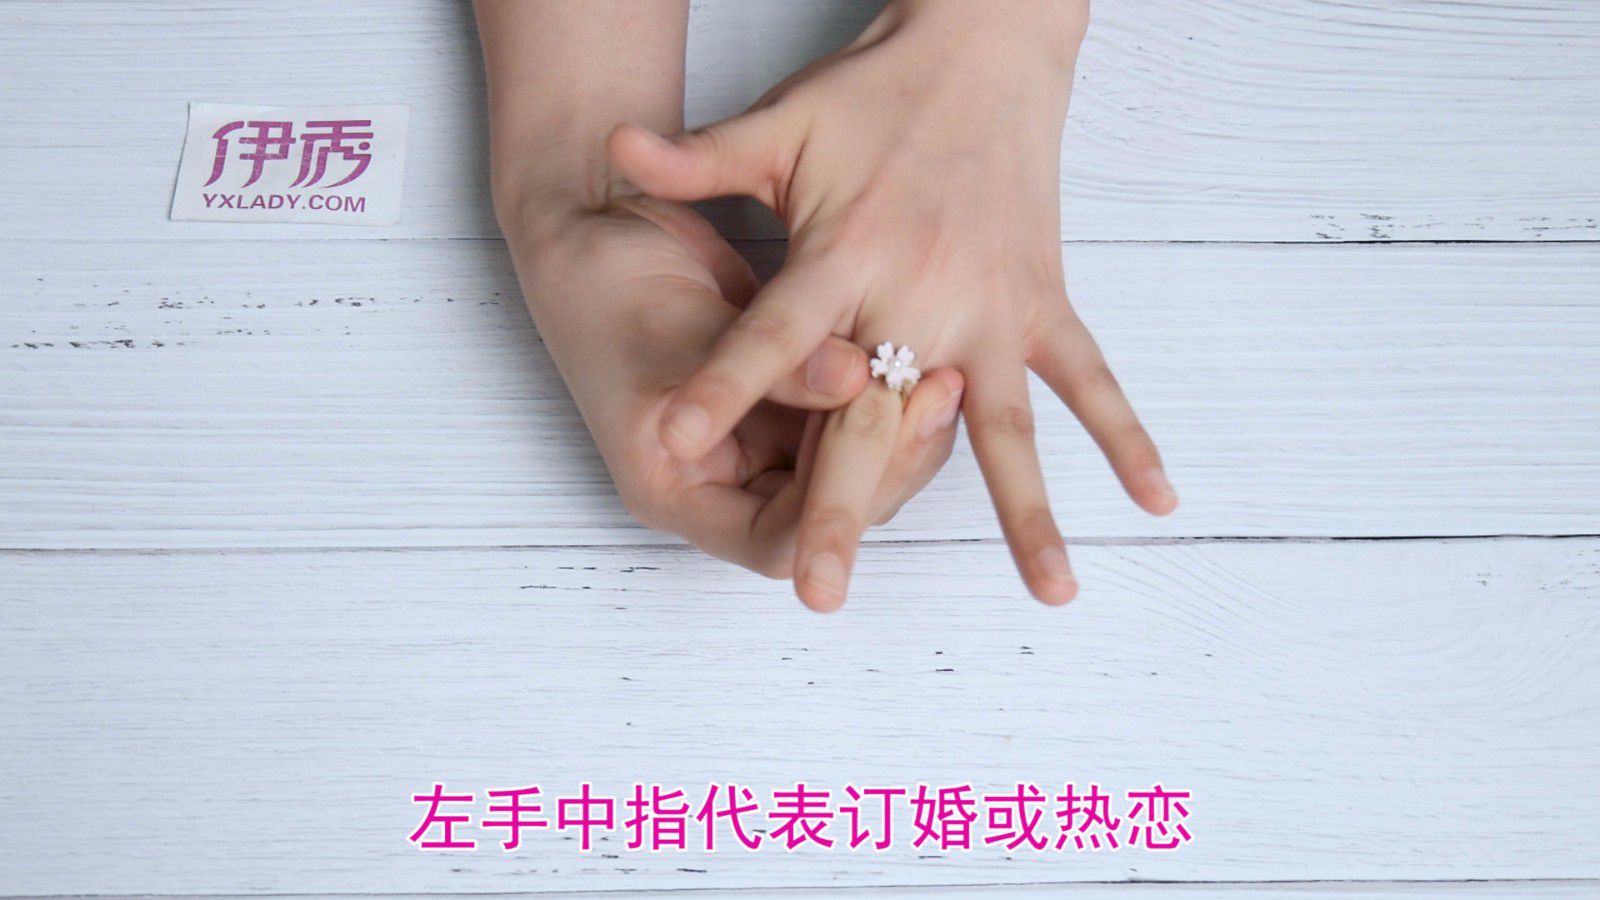 左手食指代表单身,练手的拇指不要戴戒指,右手中指和无名指均代表修女